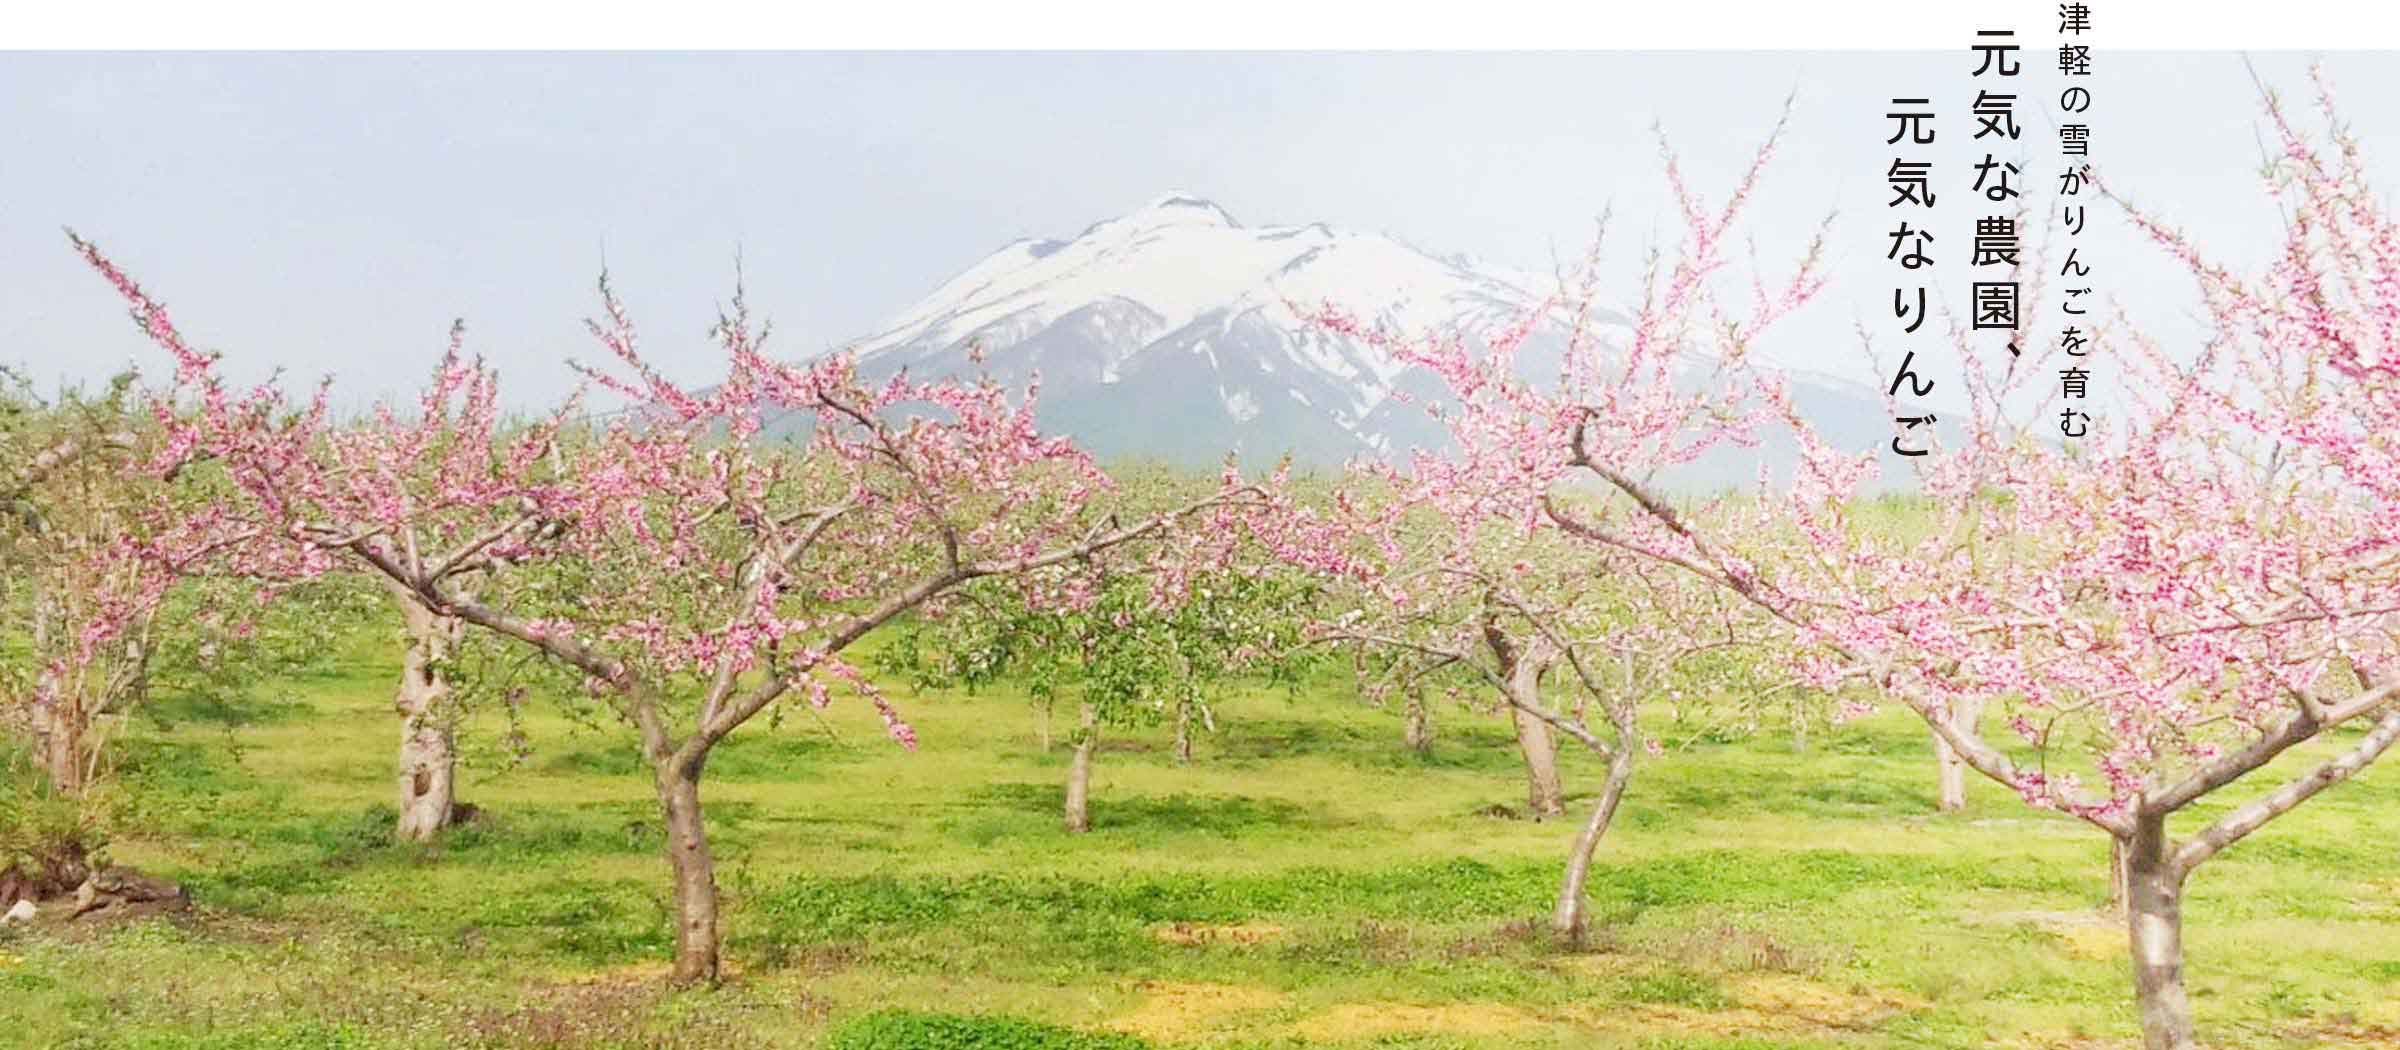 津軽の雪がりんごを育む　元気な農園、元気なりんご